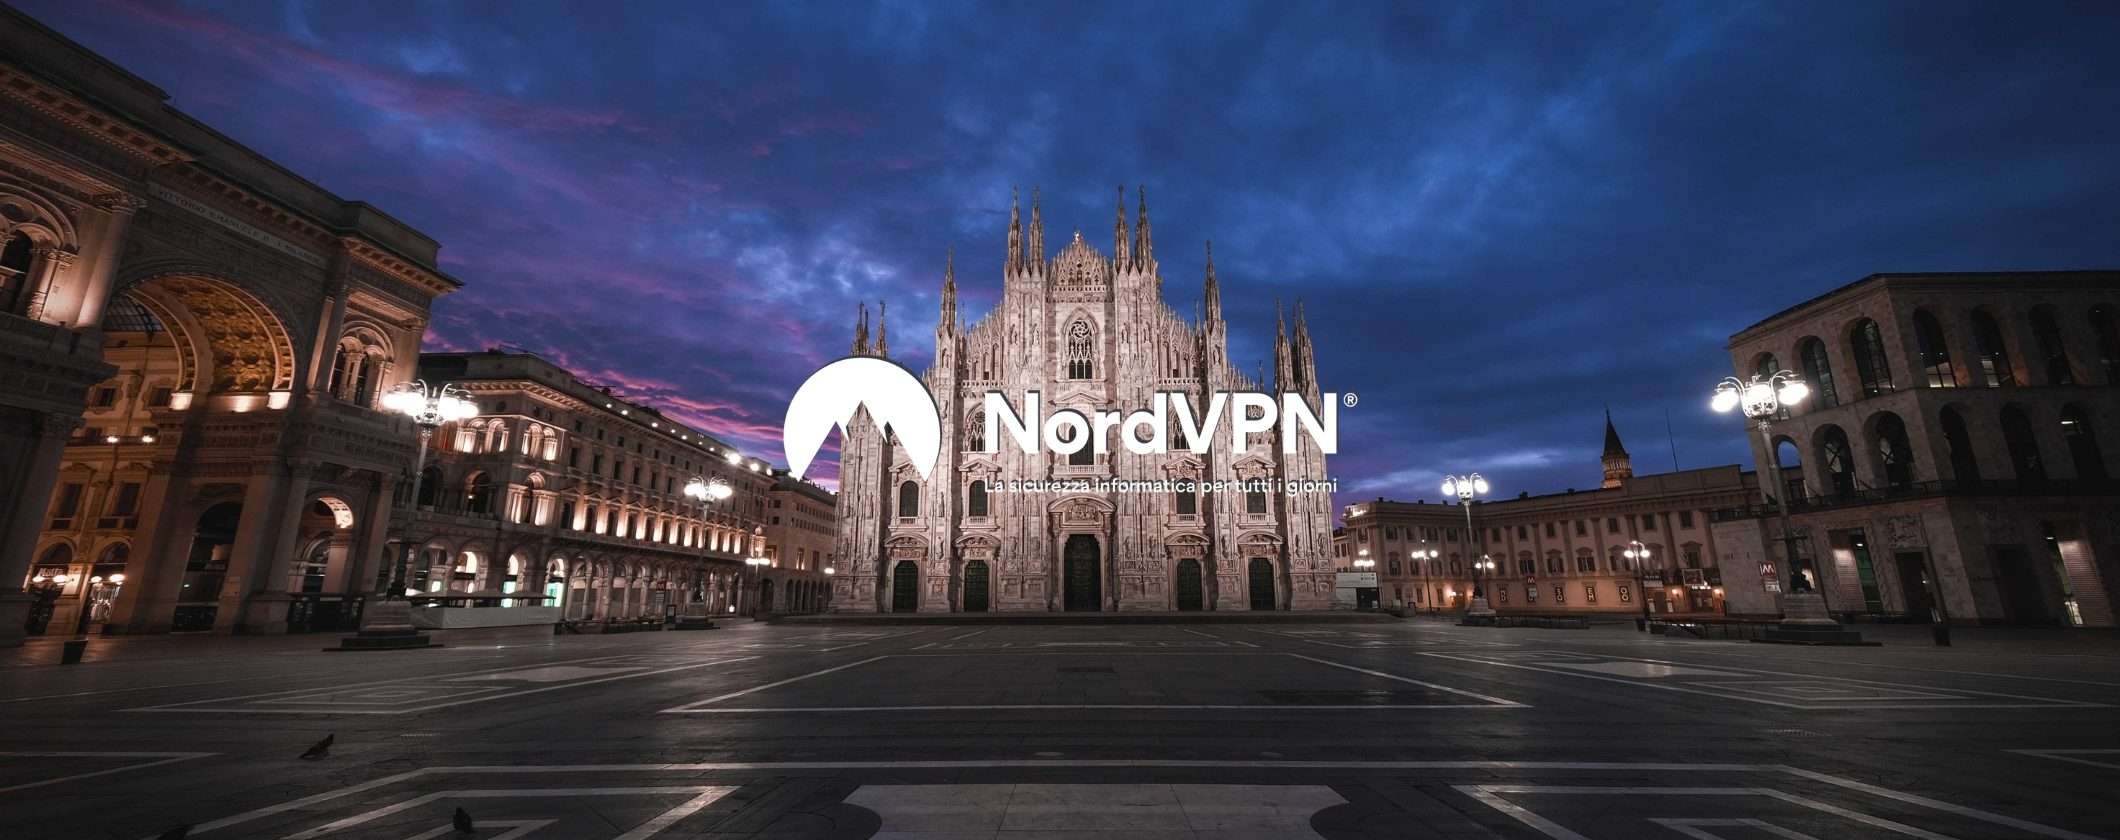 NordVPN inaugura server VPN a Milano con Indirizzo IP italiano